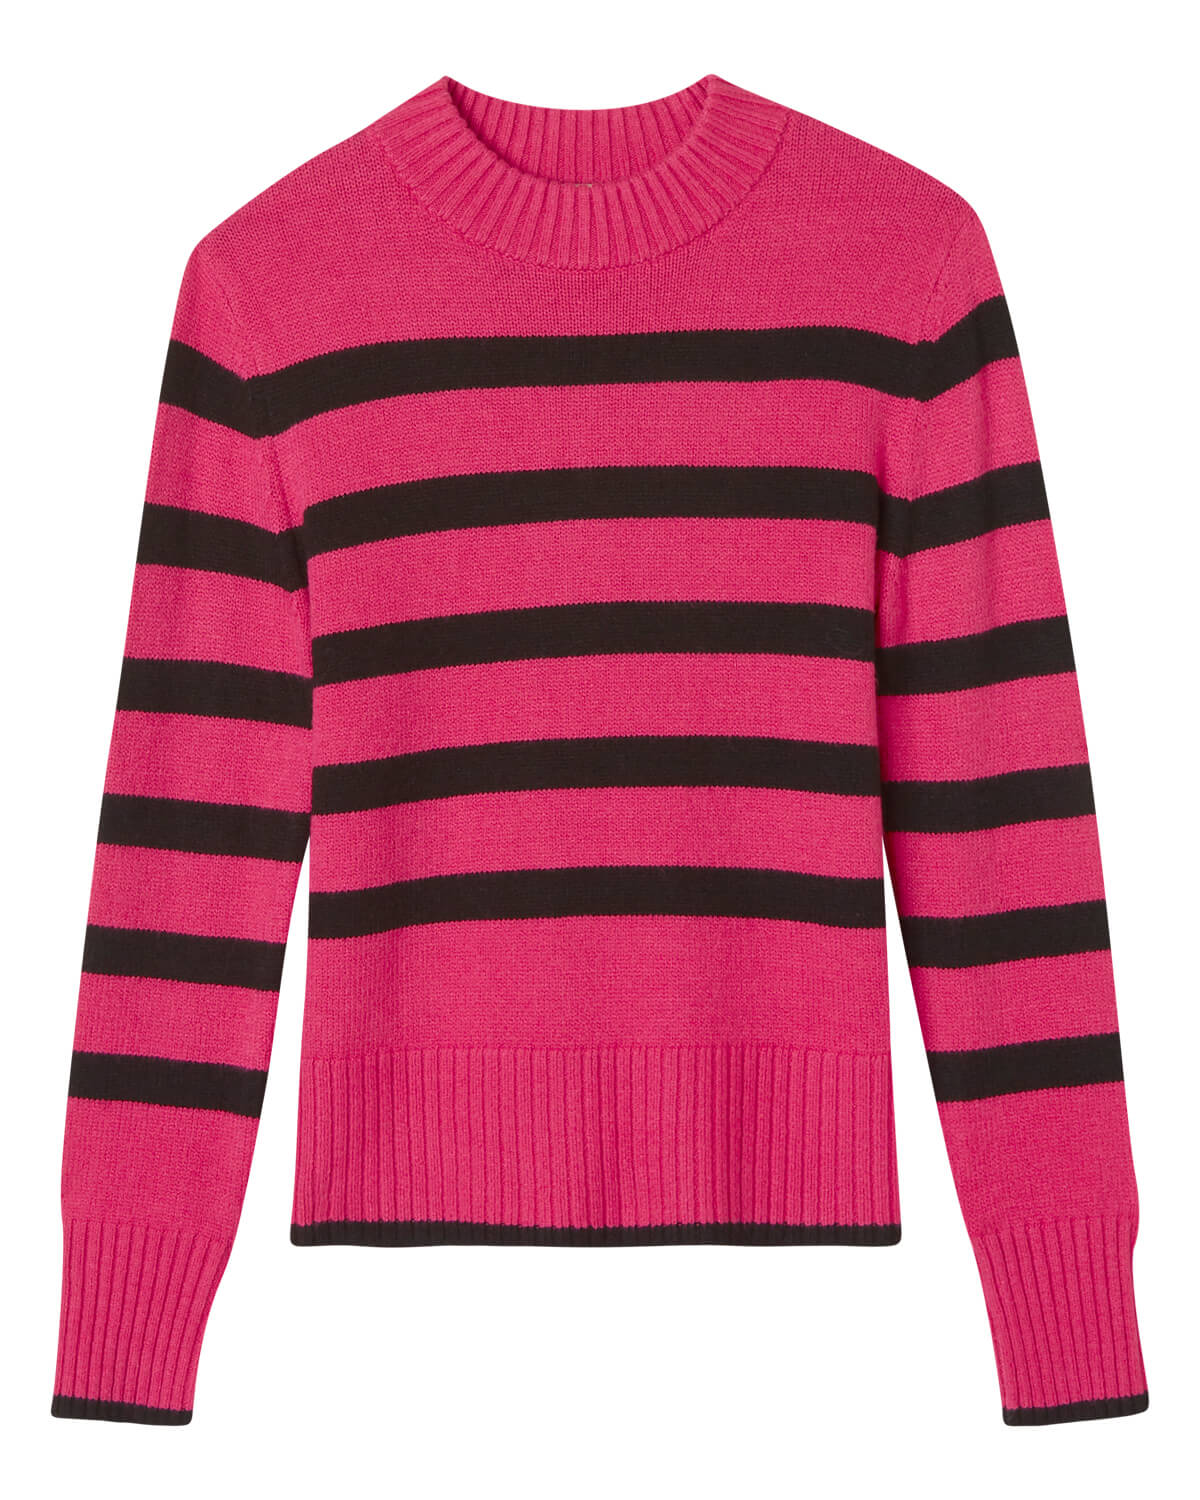 Shop Mock Neck Striped Sweater | Elie Elie Tahari | JANE + MERCER